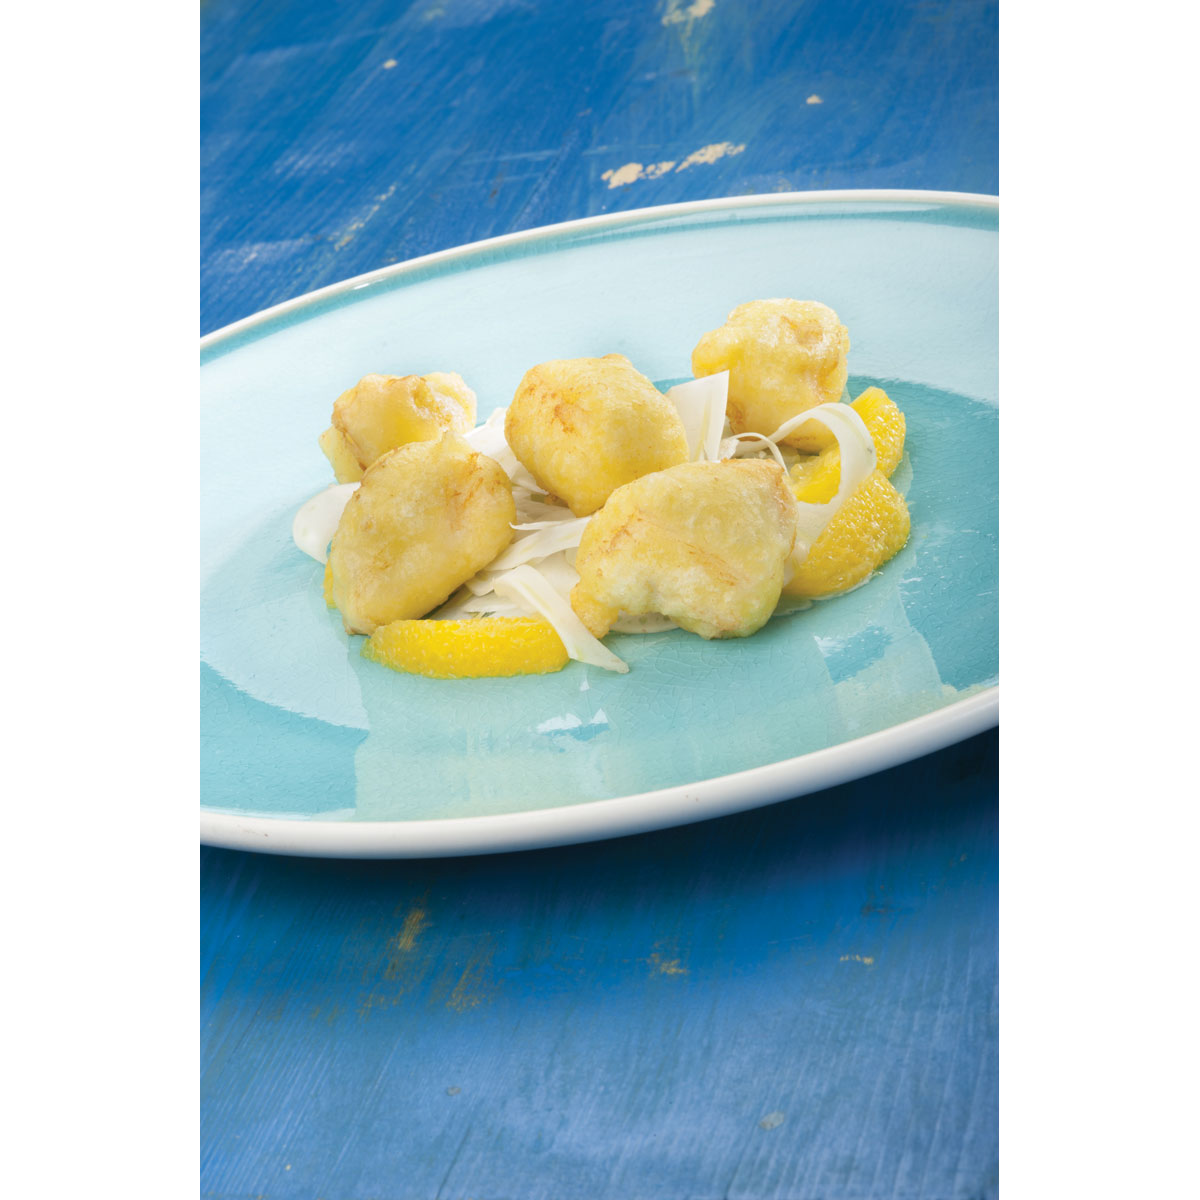 Fish and cheese (crocchette di merluzzo e Grana Padano)